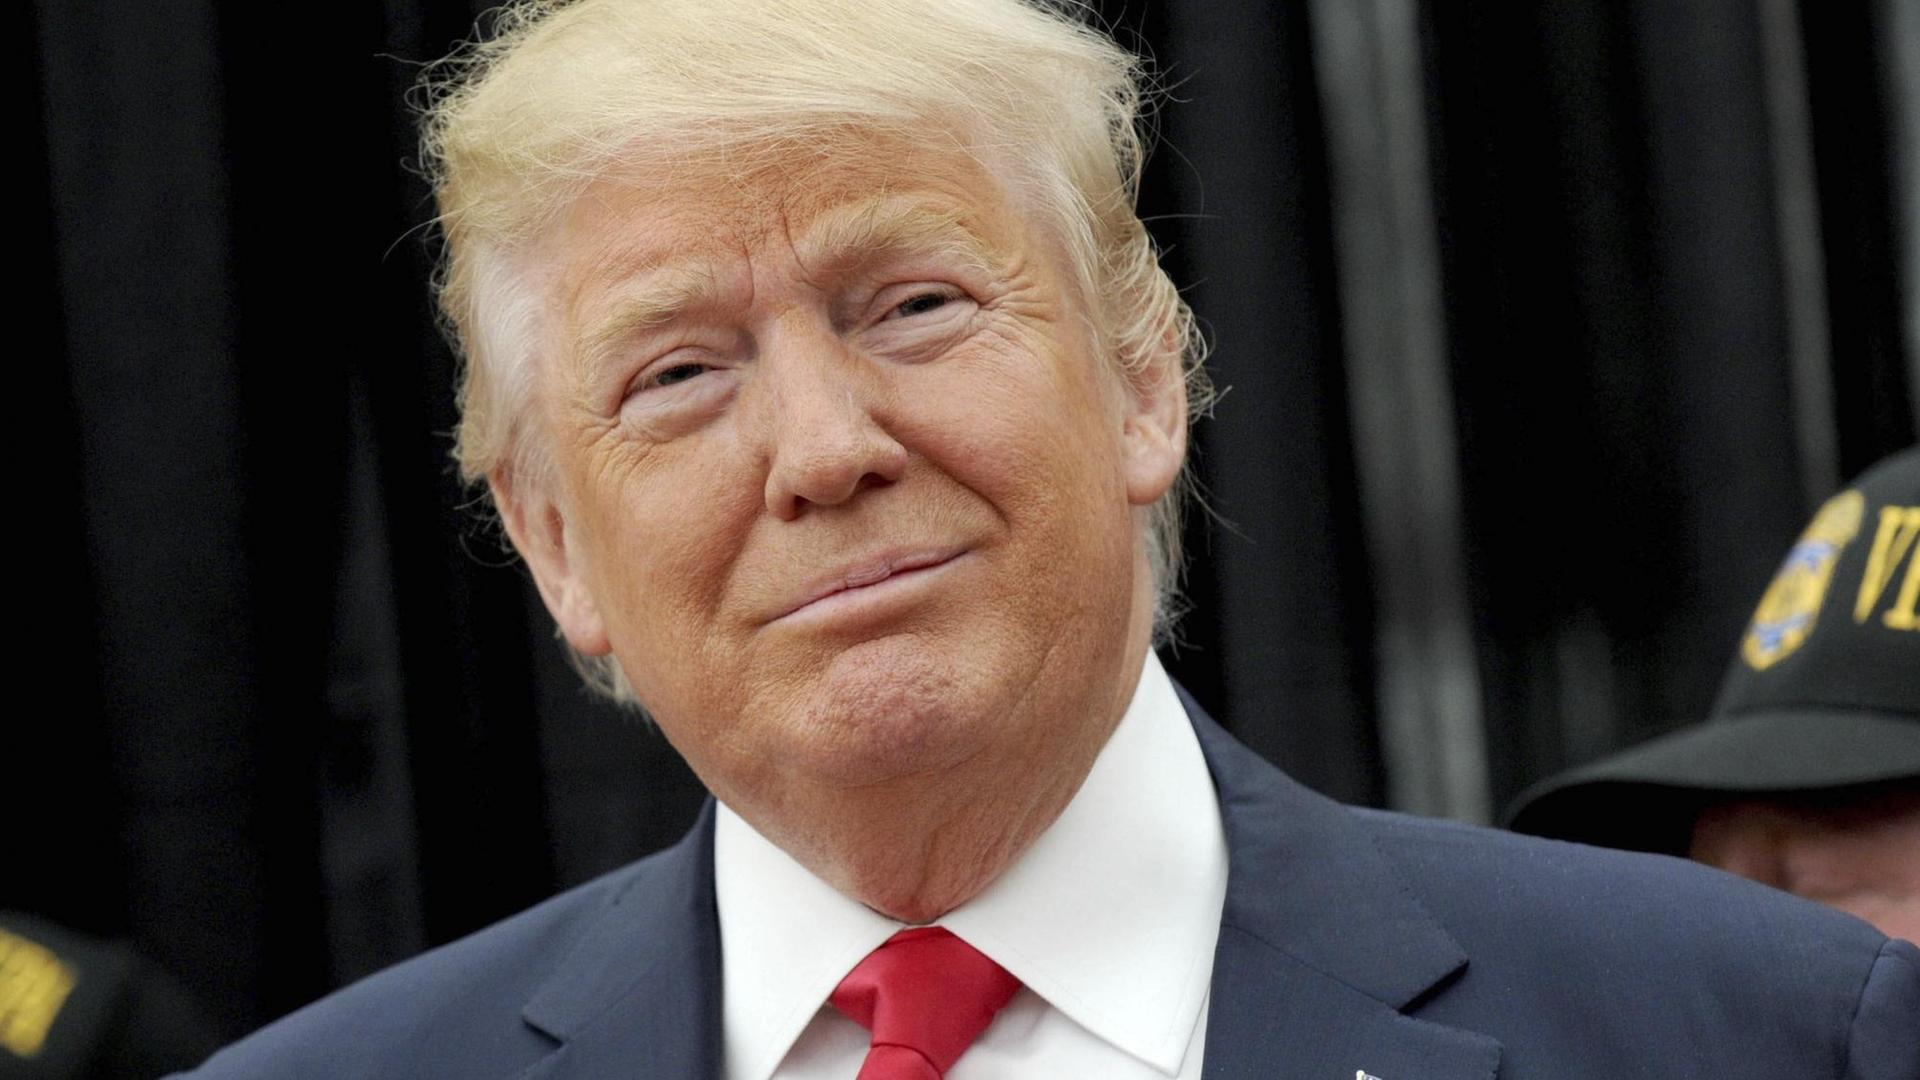 Porträt von Donald Trump. Er trägt einen dunklen Anzug und eine rote Krawatte